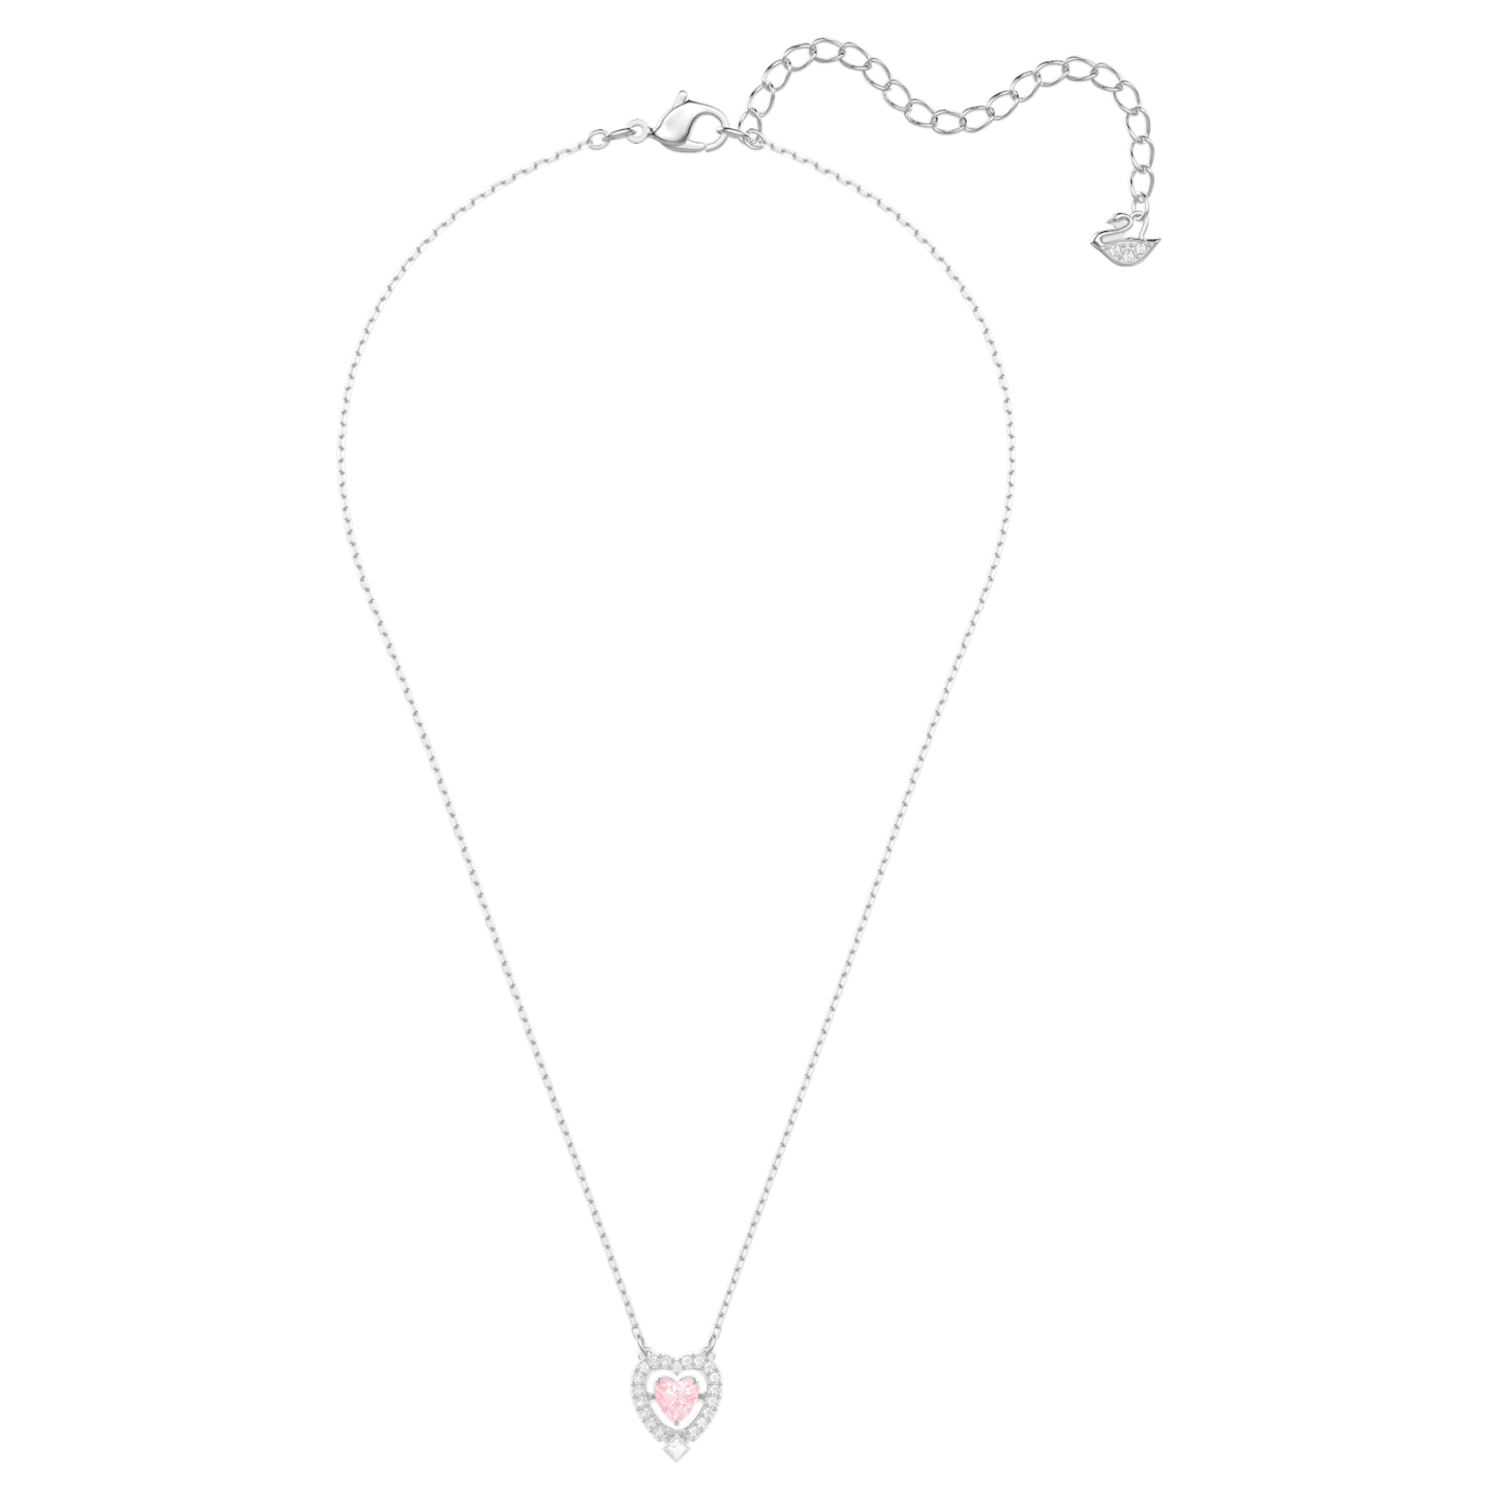 Swarovski Sparkling Dance necklace, Heart, Pink, Rhodium plated 